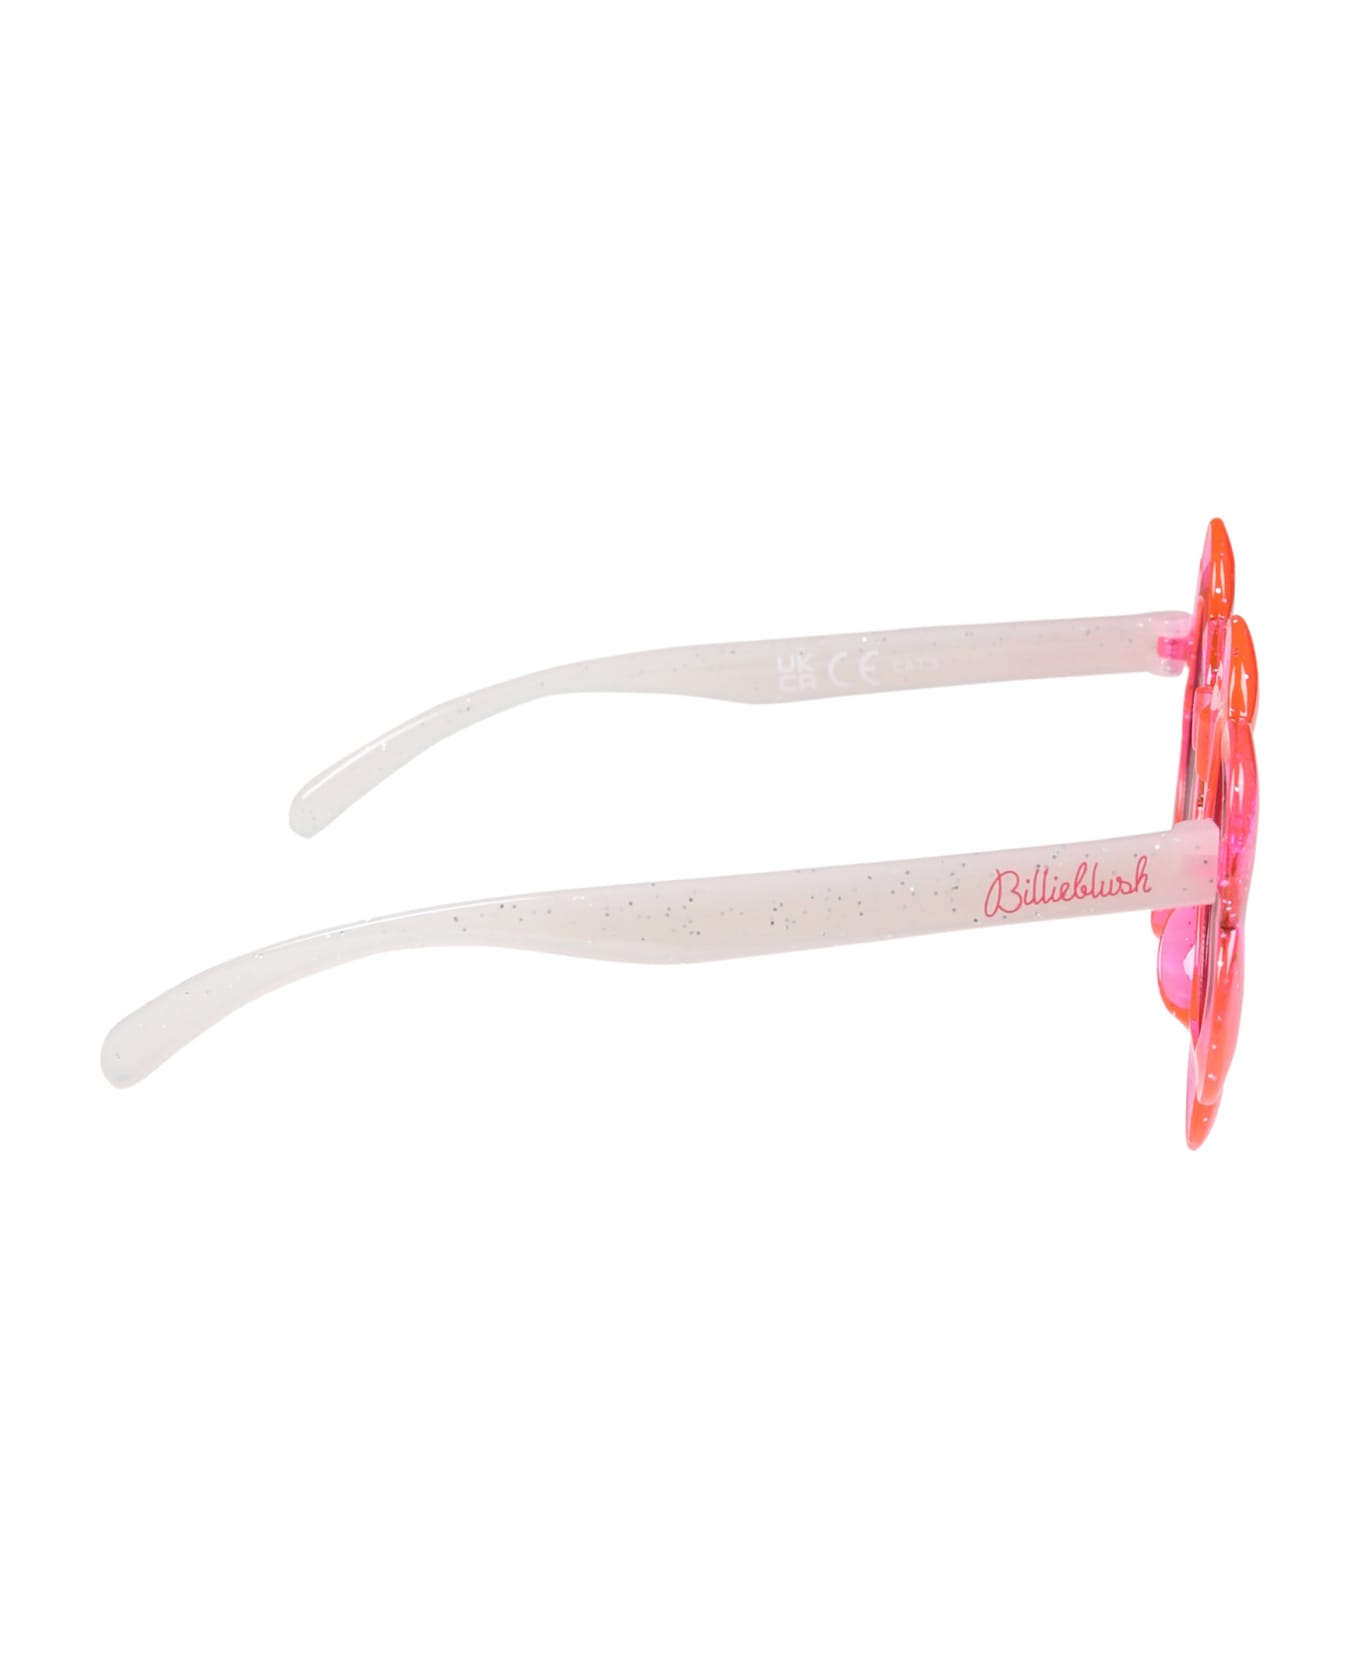 Billieblush Fuchsia Flower-shaped Sunglasses For Girl - Fuchsia